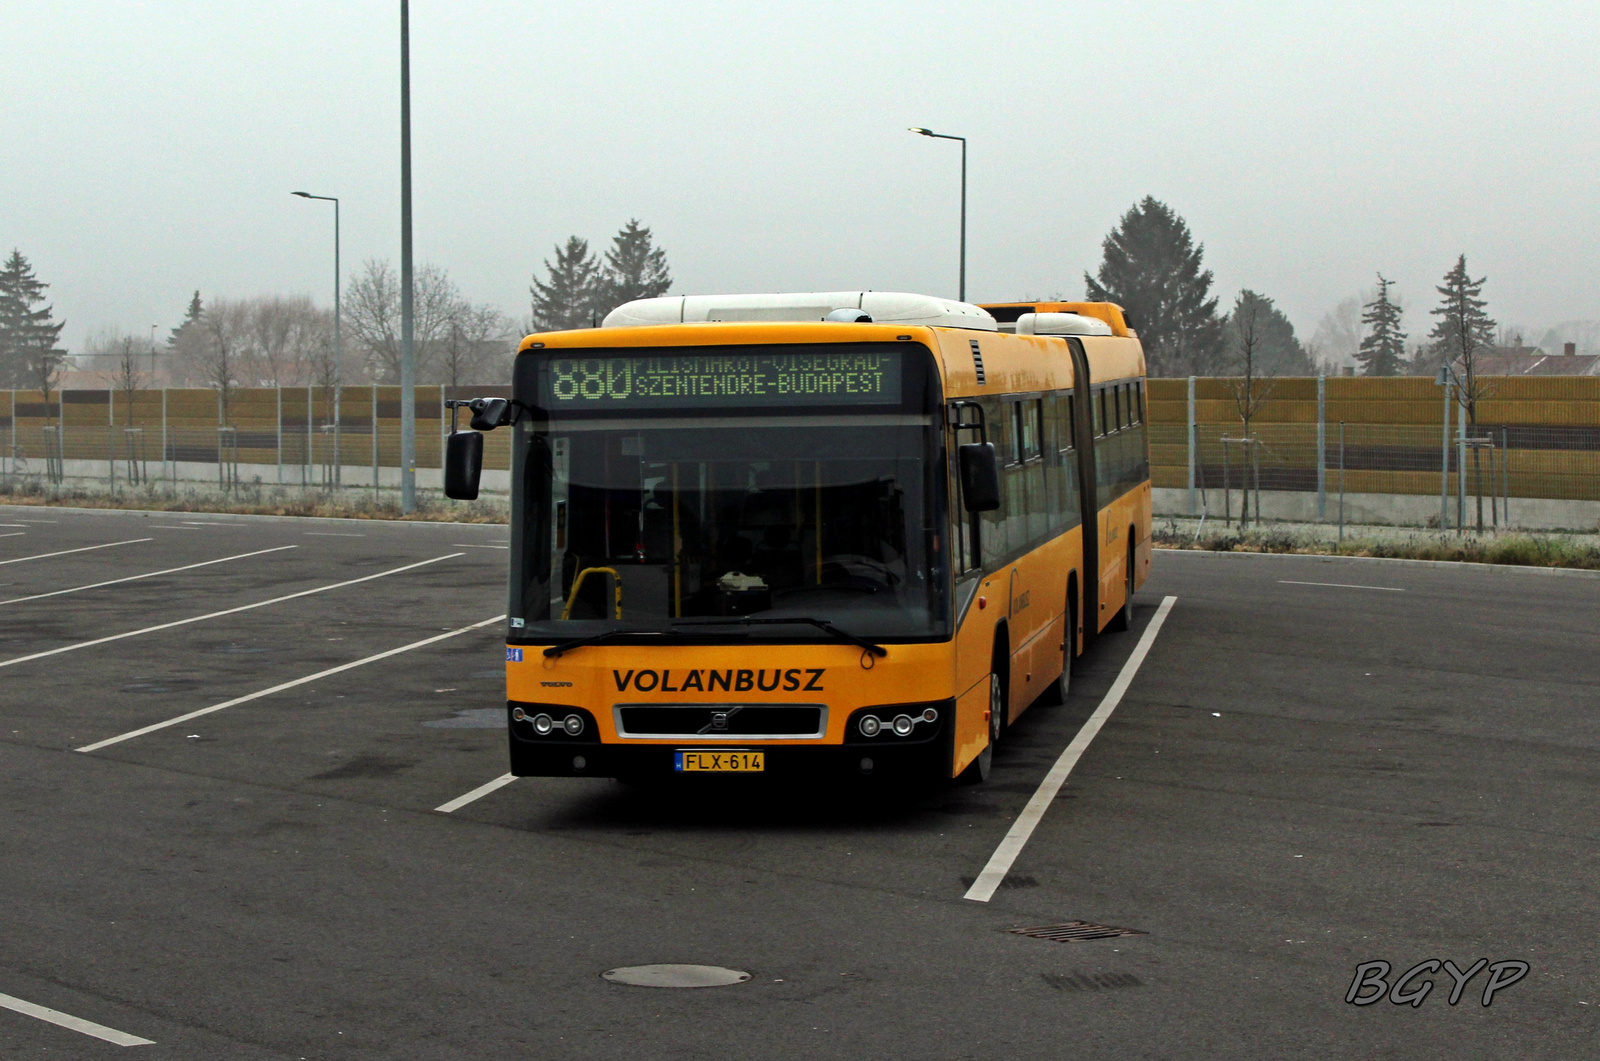 Volvo 7700A (FLX-614)